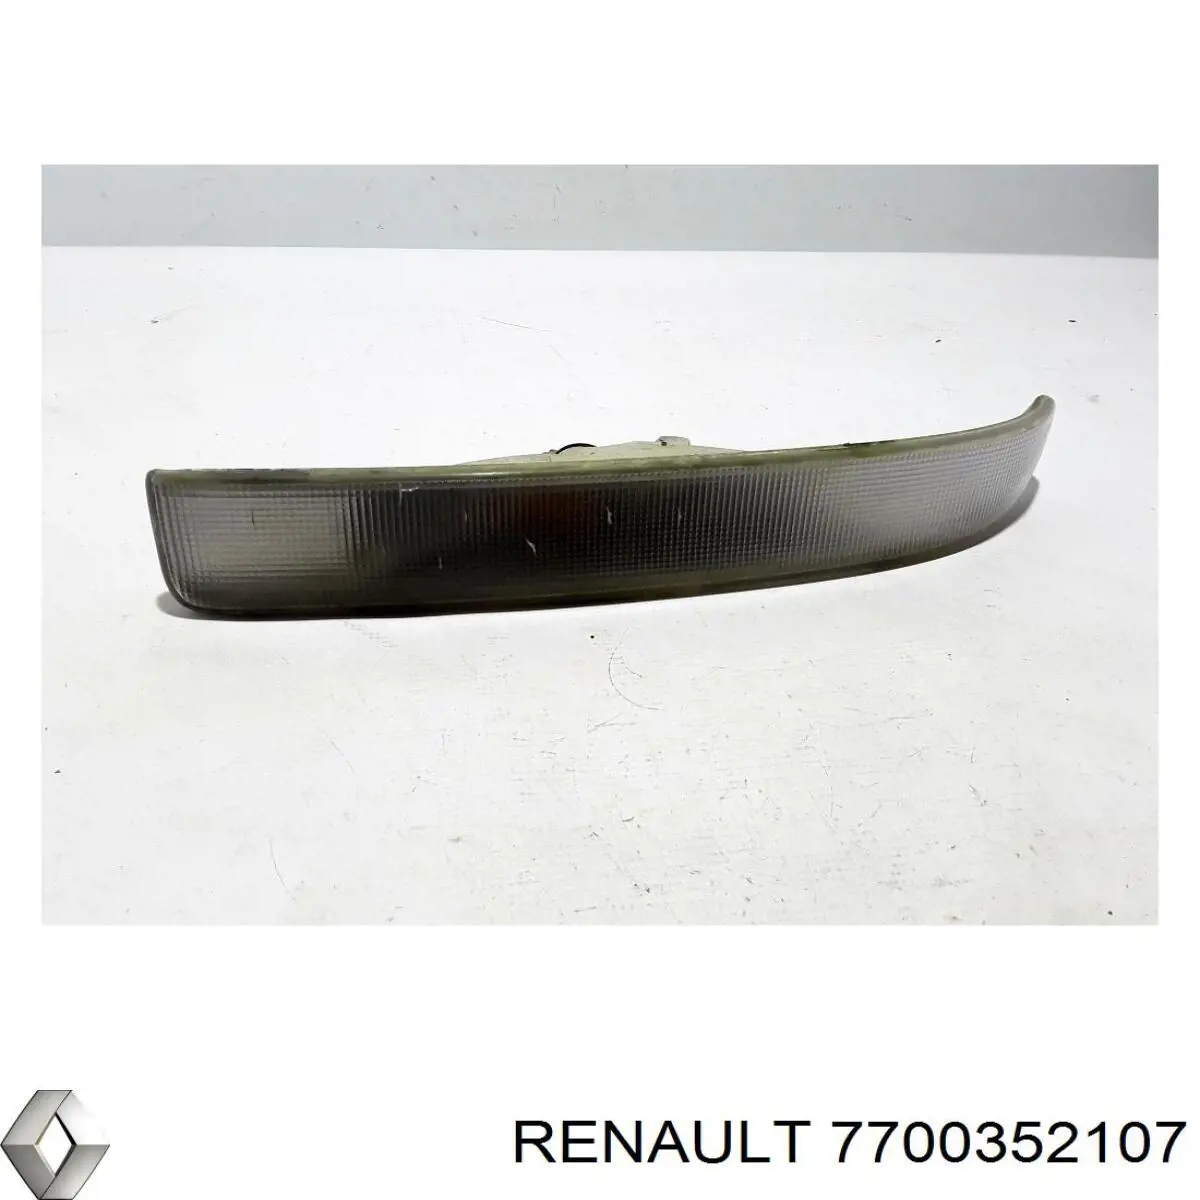 7700352107 Renault (RVI) pisca-pisca esquerdo